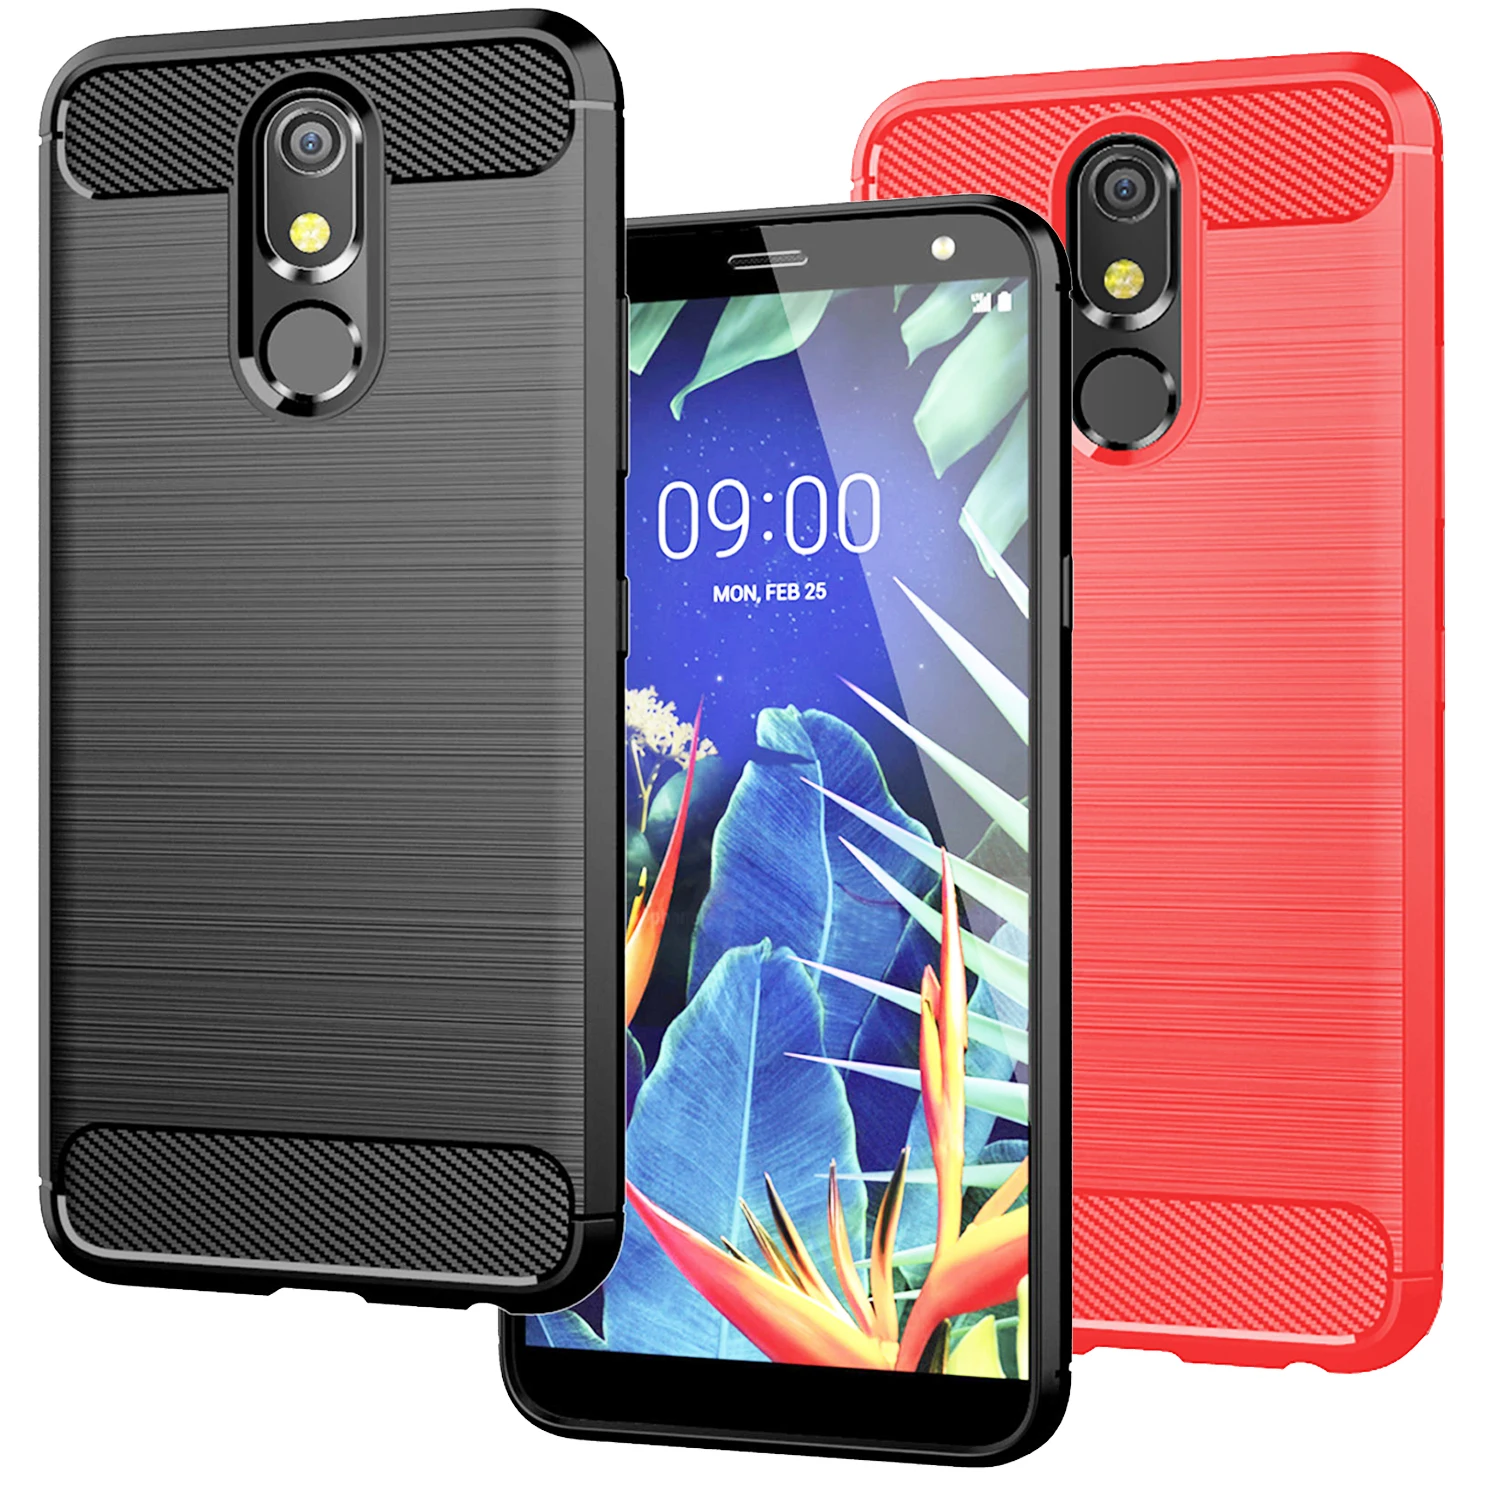 

Phone Case For LG K40 Q9 One G7 One G6 G8 G8s G8X ThinQ Escape Plus X2 X4 2019 K12+ Stylo 4 5 6 V50S G6 Case Rugged Carbon Soft